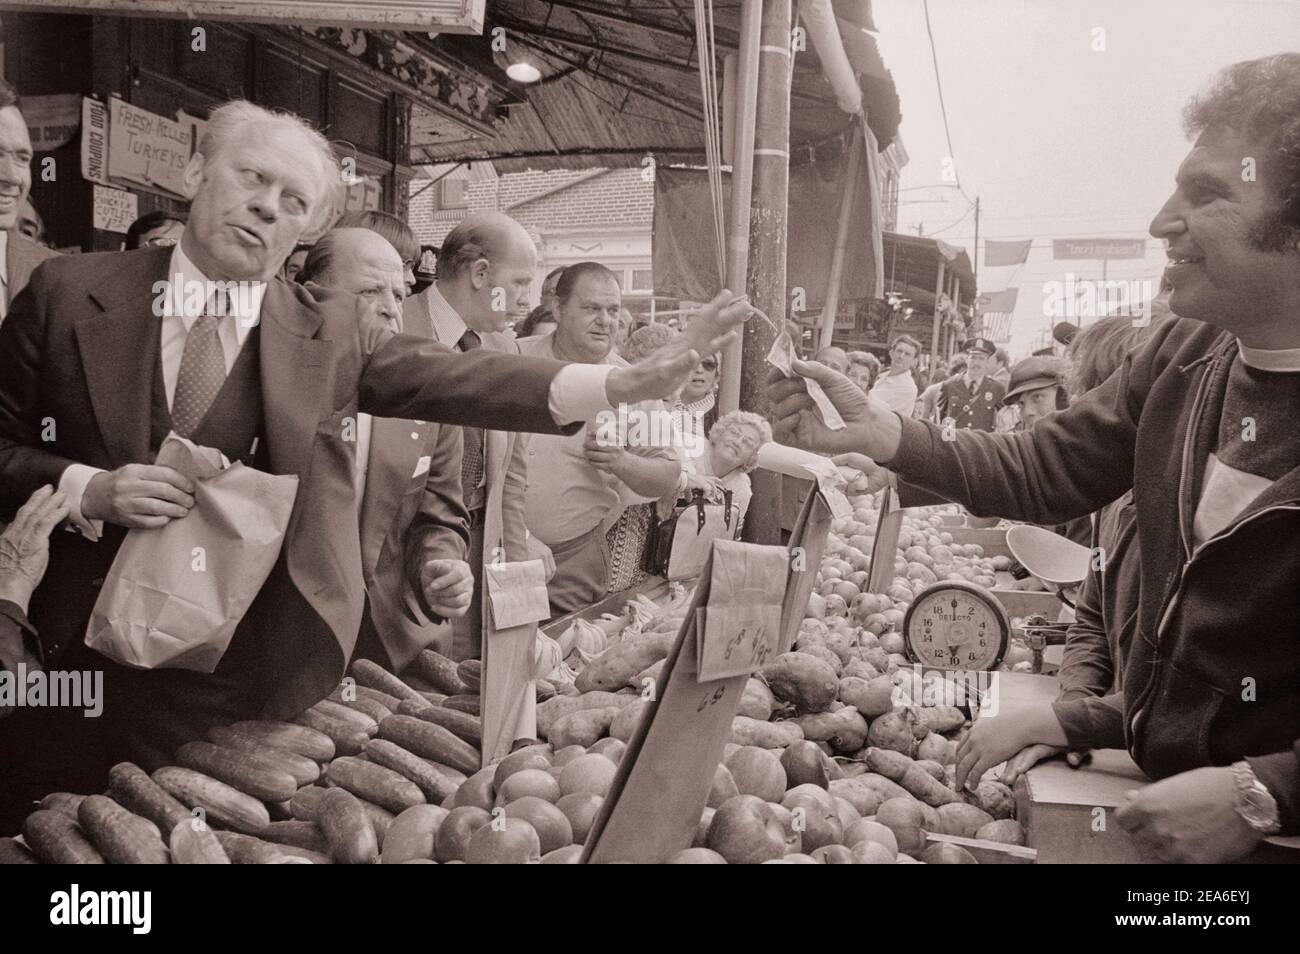 Le président Gerald Ford sur un marché agricole à Philadelphie, en Pennsylvanie, aux États-Unis. Septembre 1976 Banque D'Images